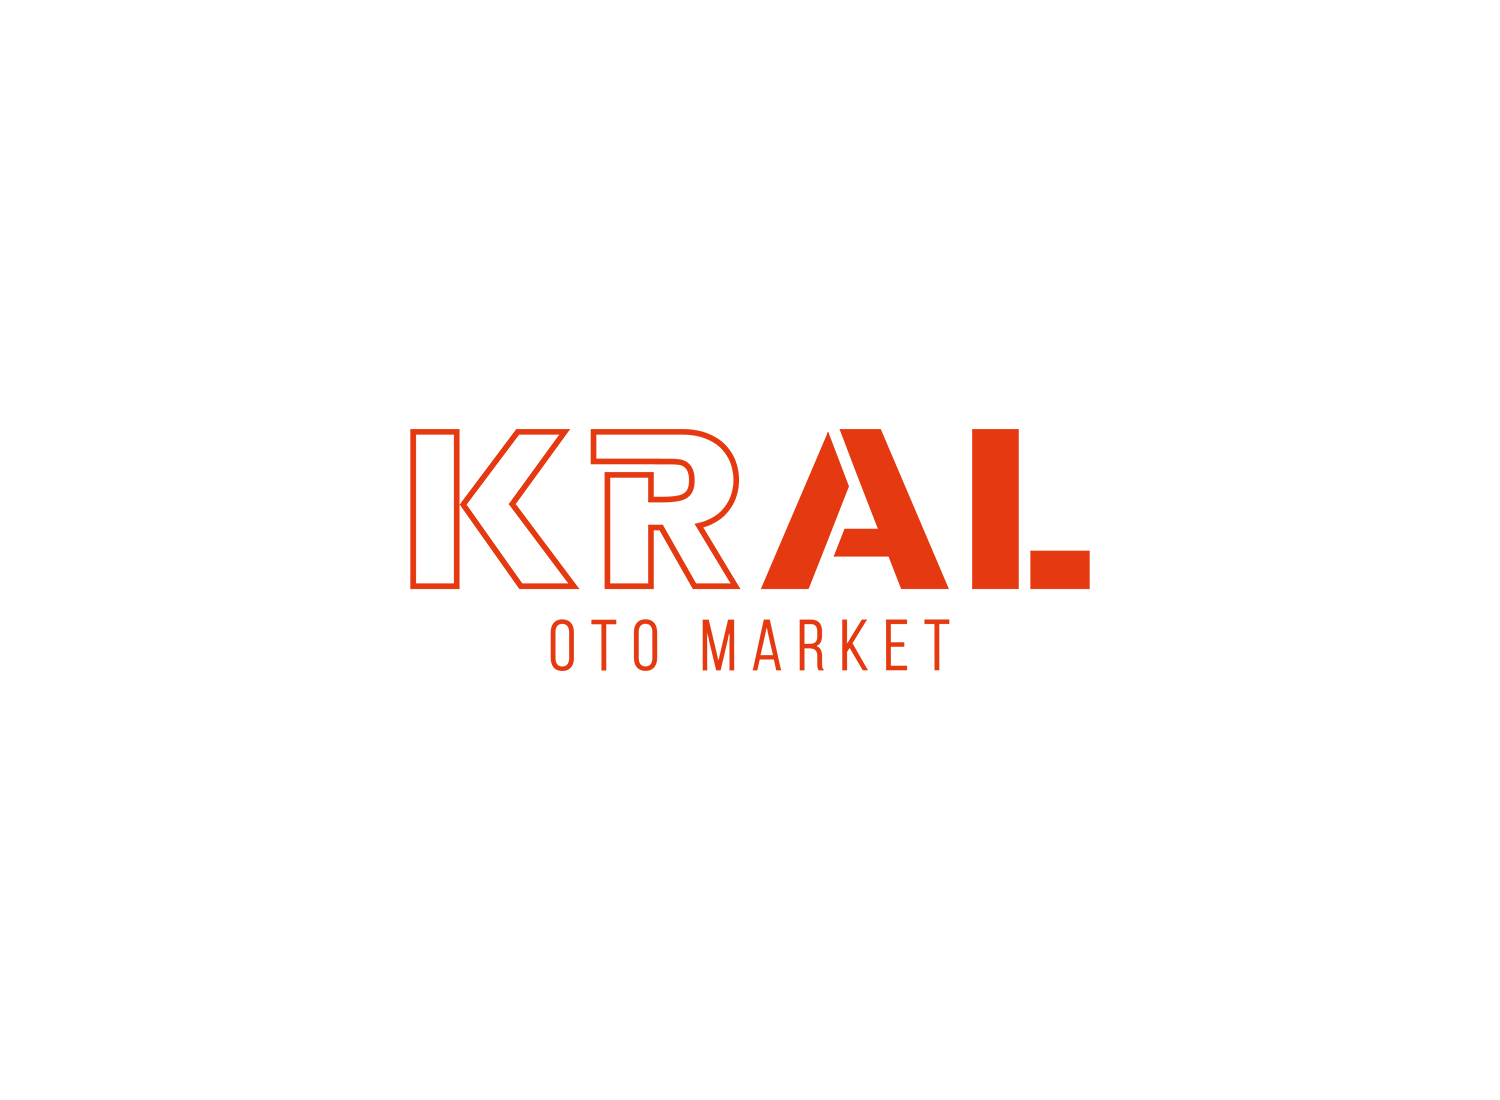 Kral Oto Market